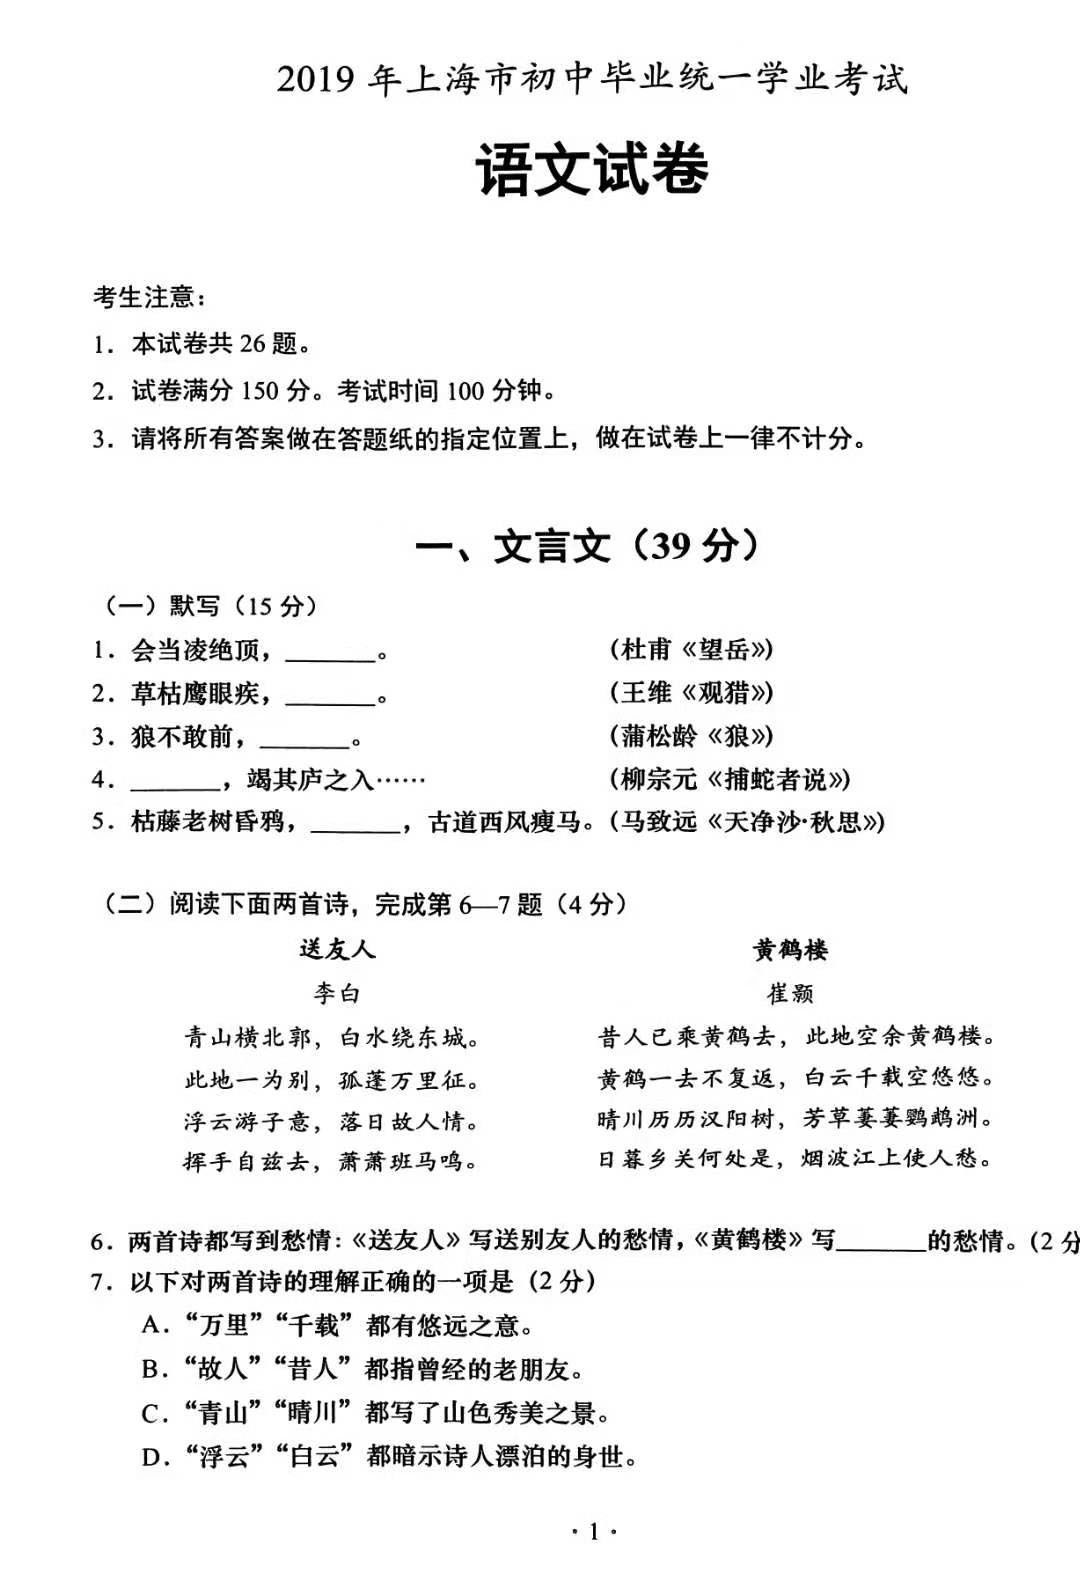 2019年上海中考《语文》真题及答案已公布